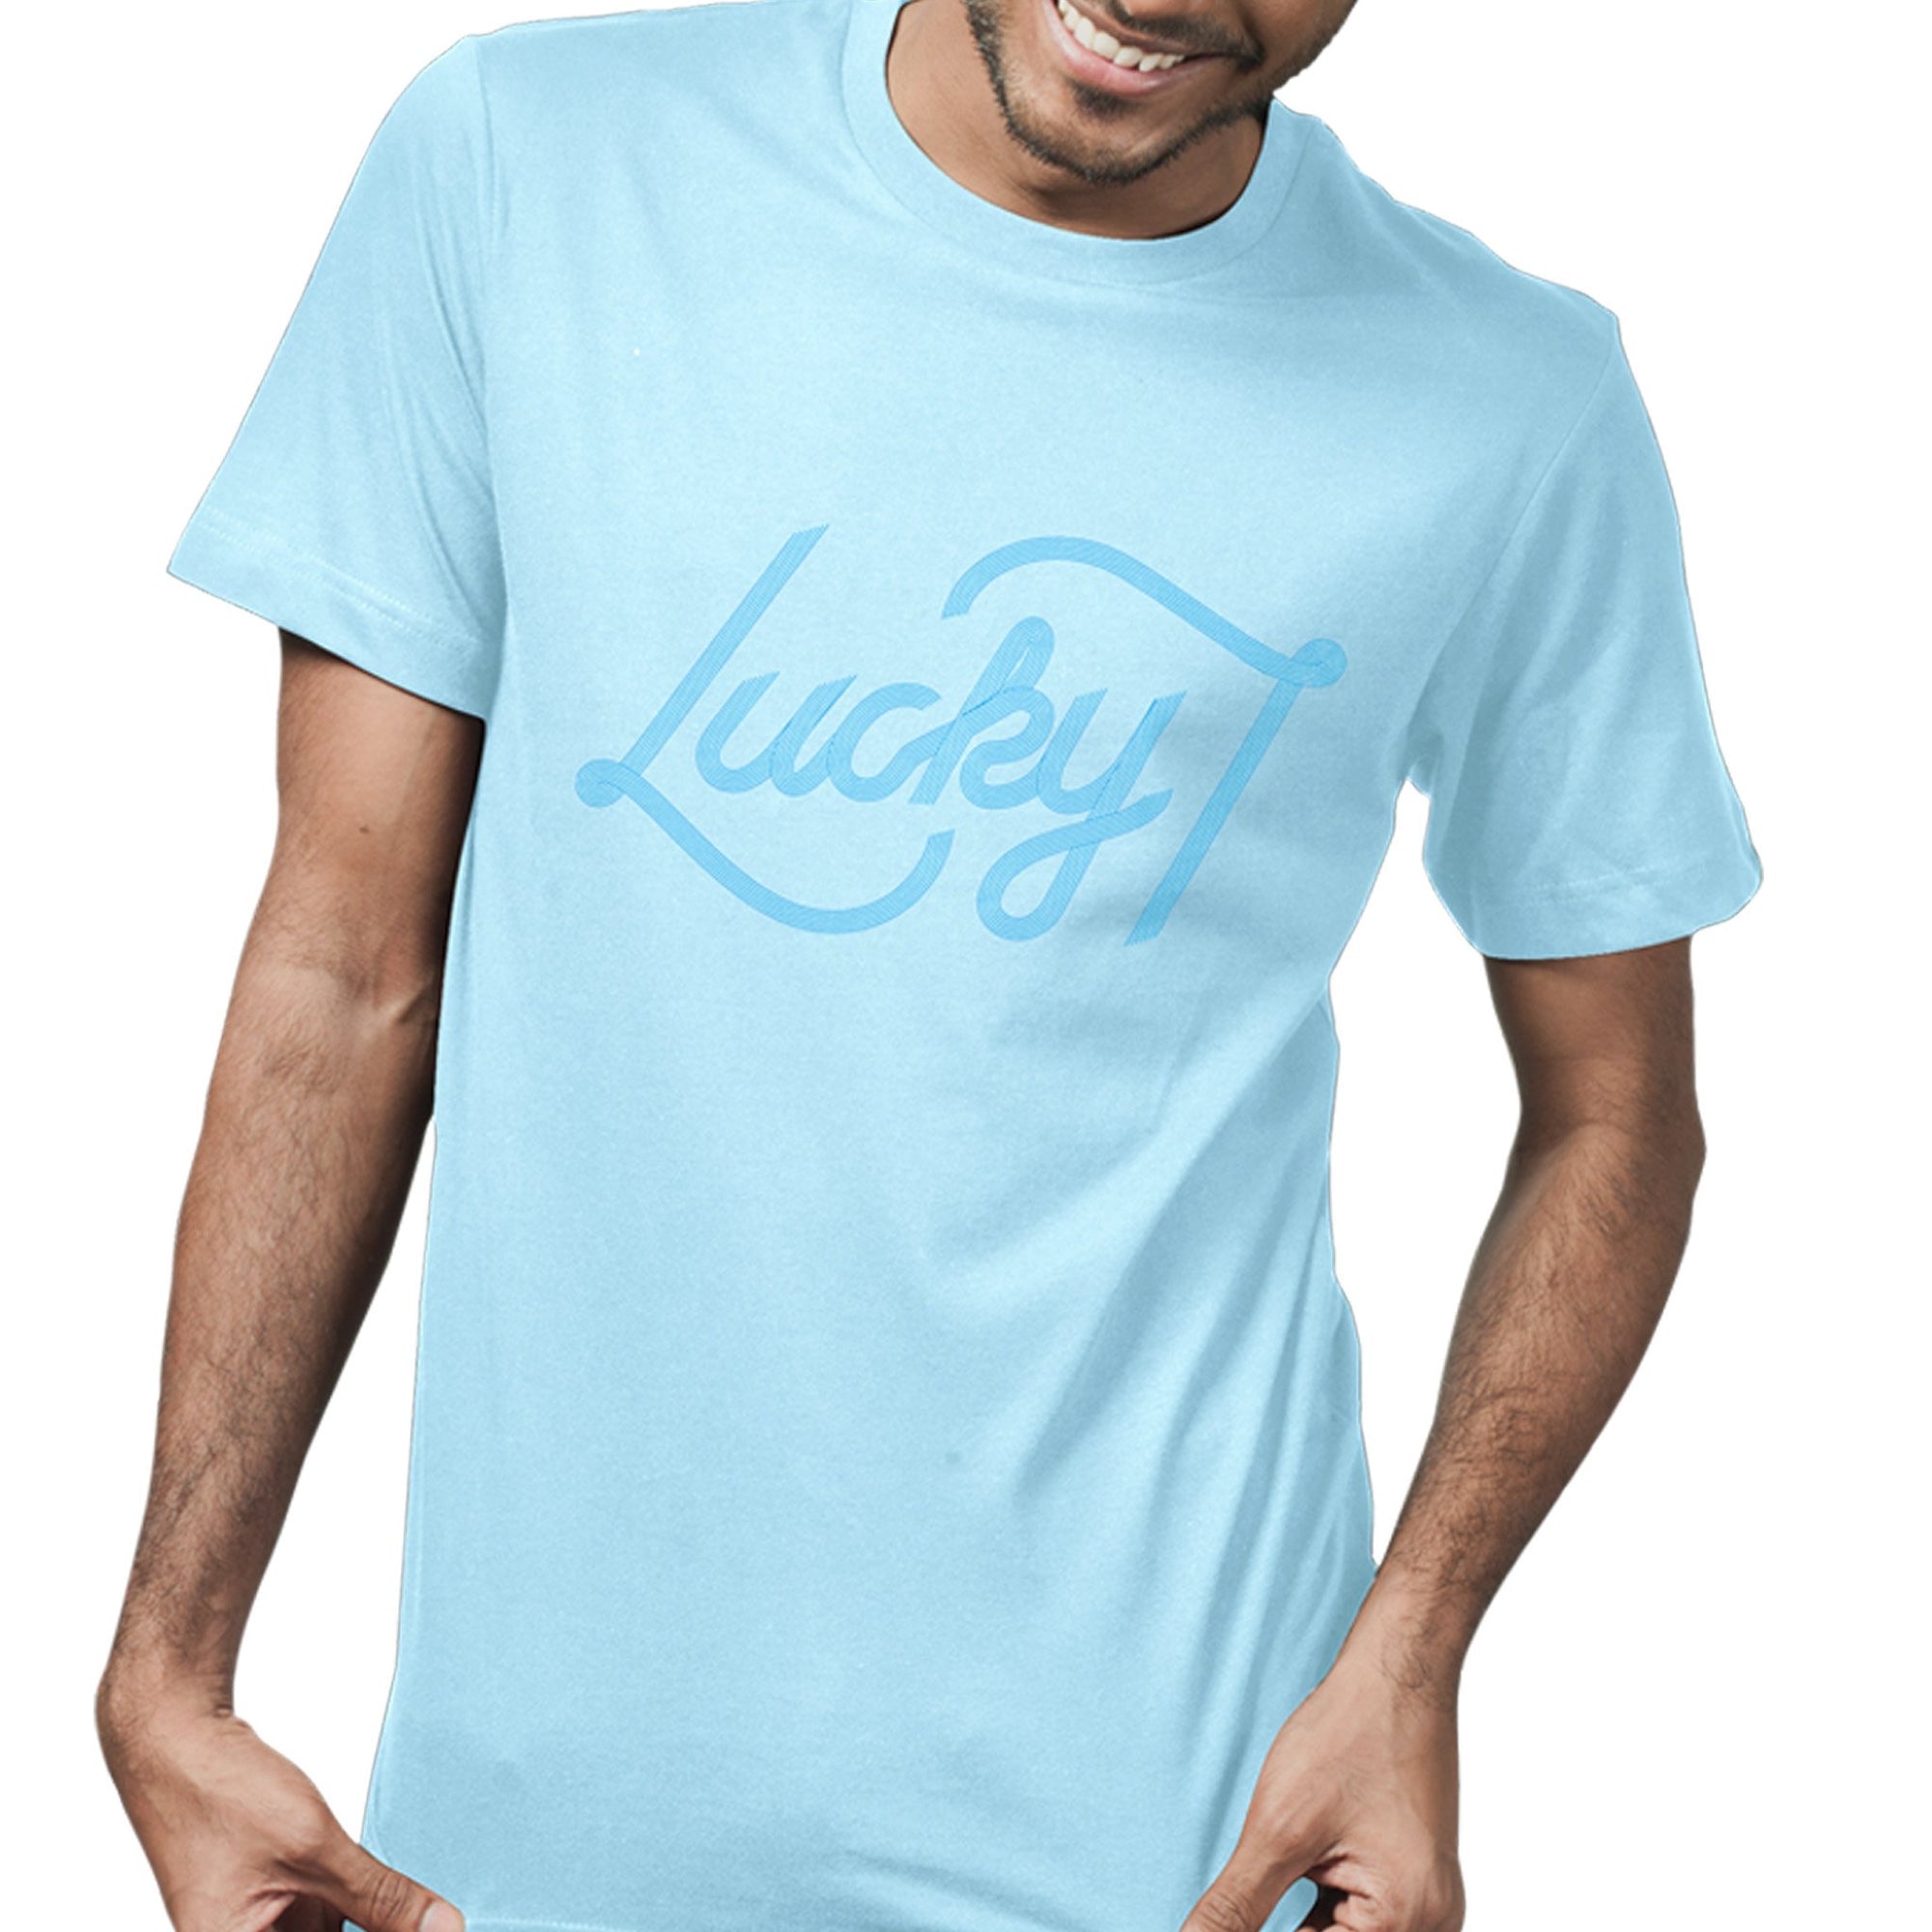 Lucky brand t shirt, us size small 100% cotton, shivaya07